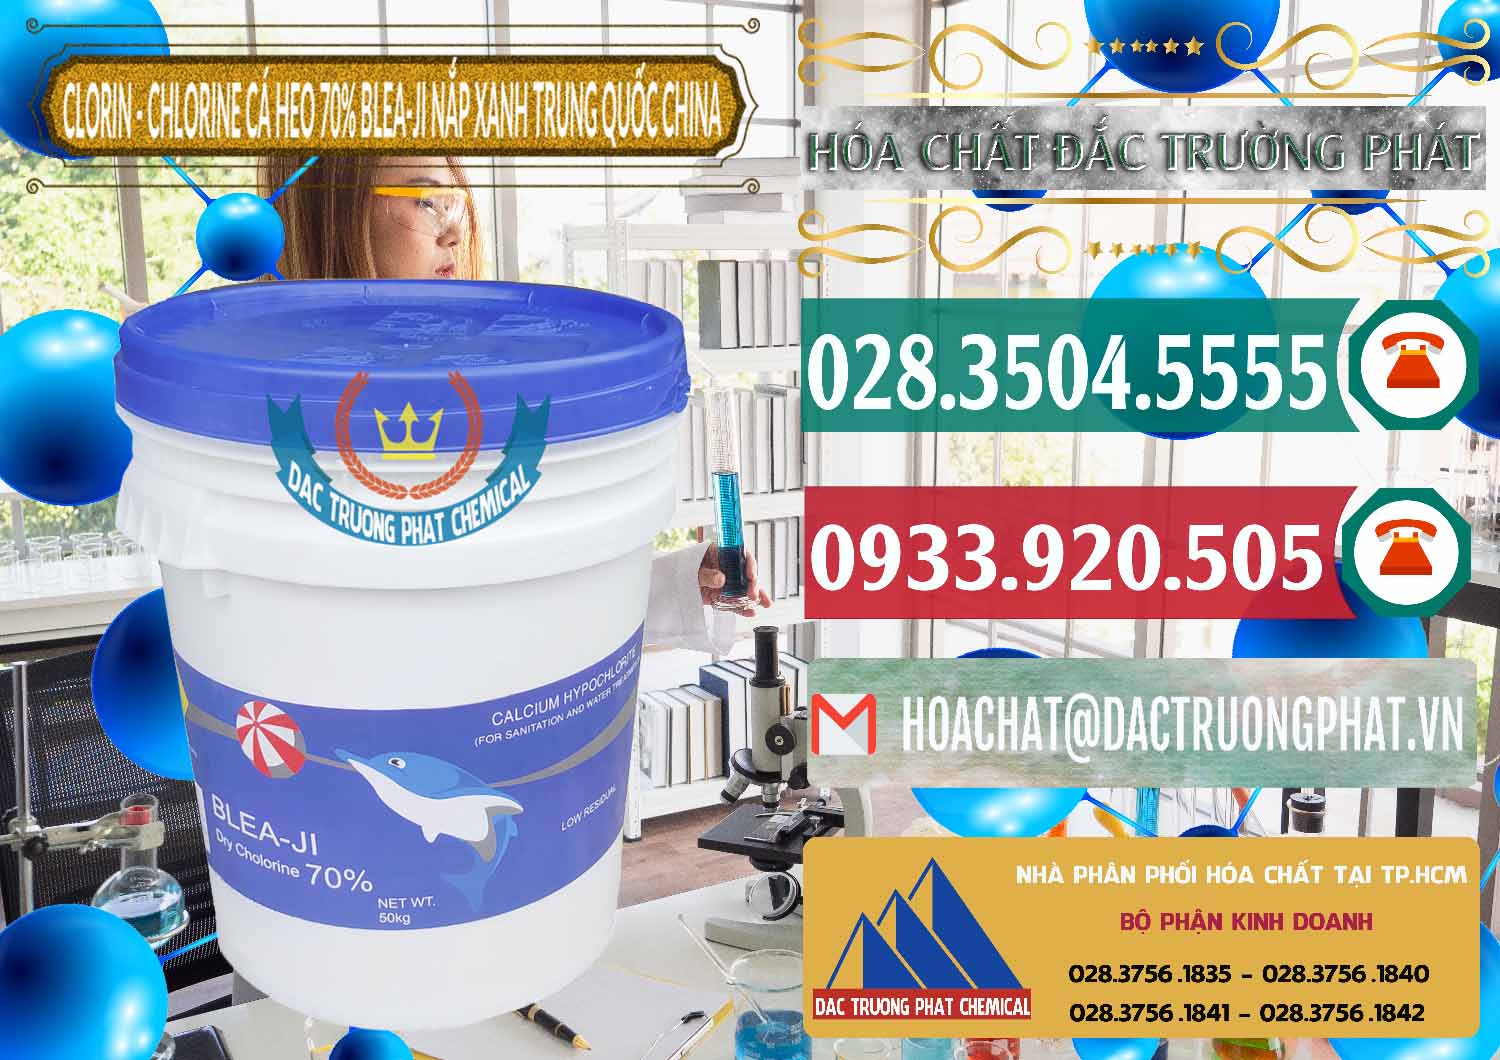 Cty chuyên cung ứng ( bán ) Clorin - Chlorine Cá Heo 70% Cá Heo Blea-Ji Thùng Tròn Nắp Xanh Trung Quốc China - 0208 - Nhà cung cấp - phân phối hóa chất tại TP.HCM - muabanhoachat.vn